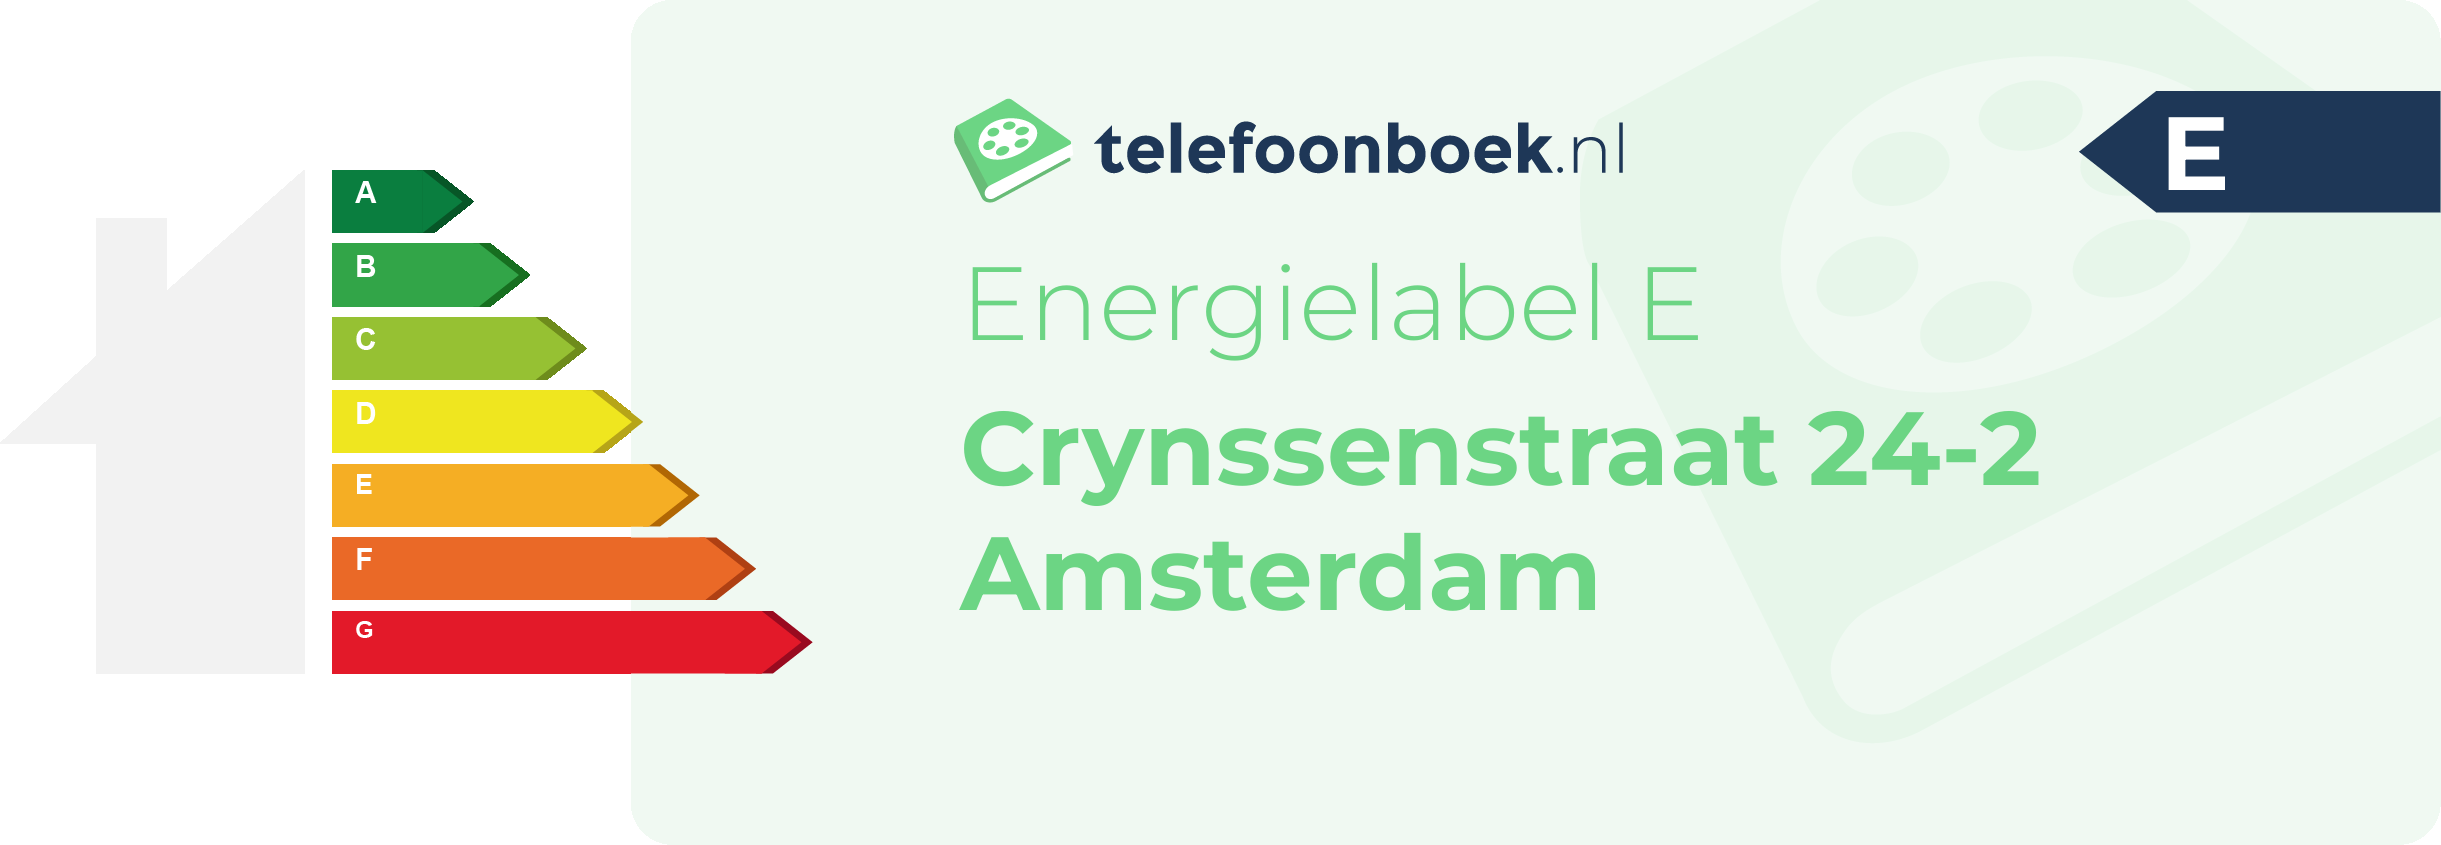 Energielabel Crynssenstraat 24-2 Amsterdam